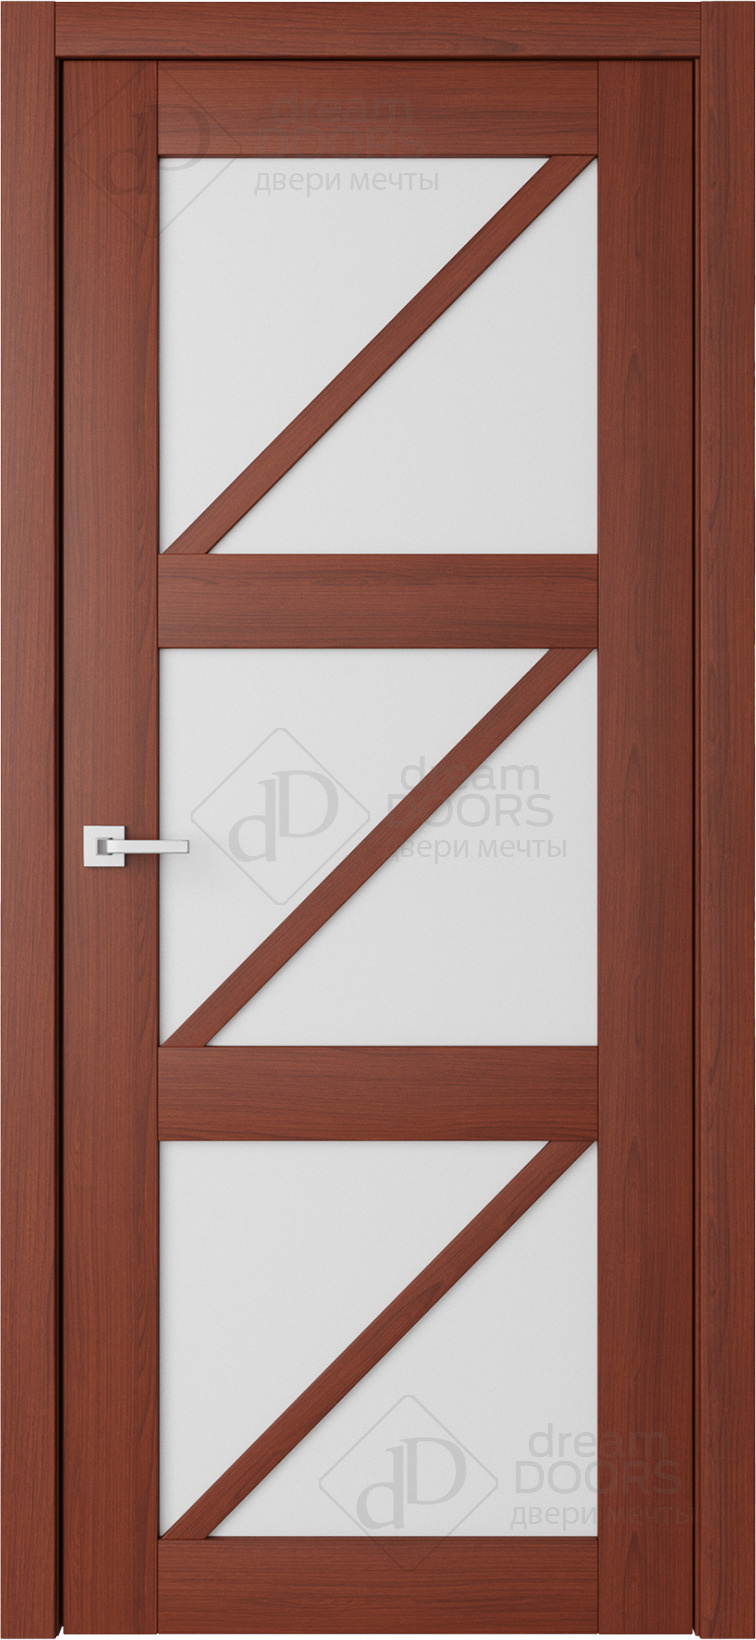 Dream Doors Межкомнатная дверь V29, арт. 18246 - фото №1